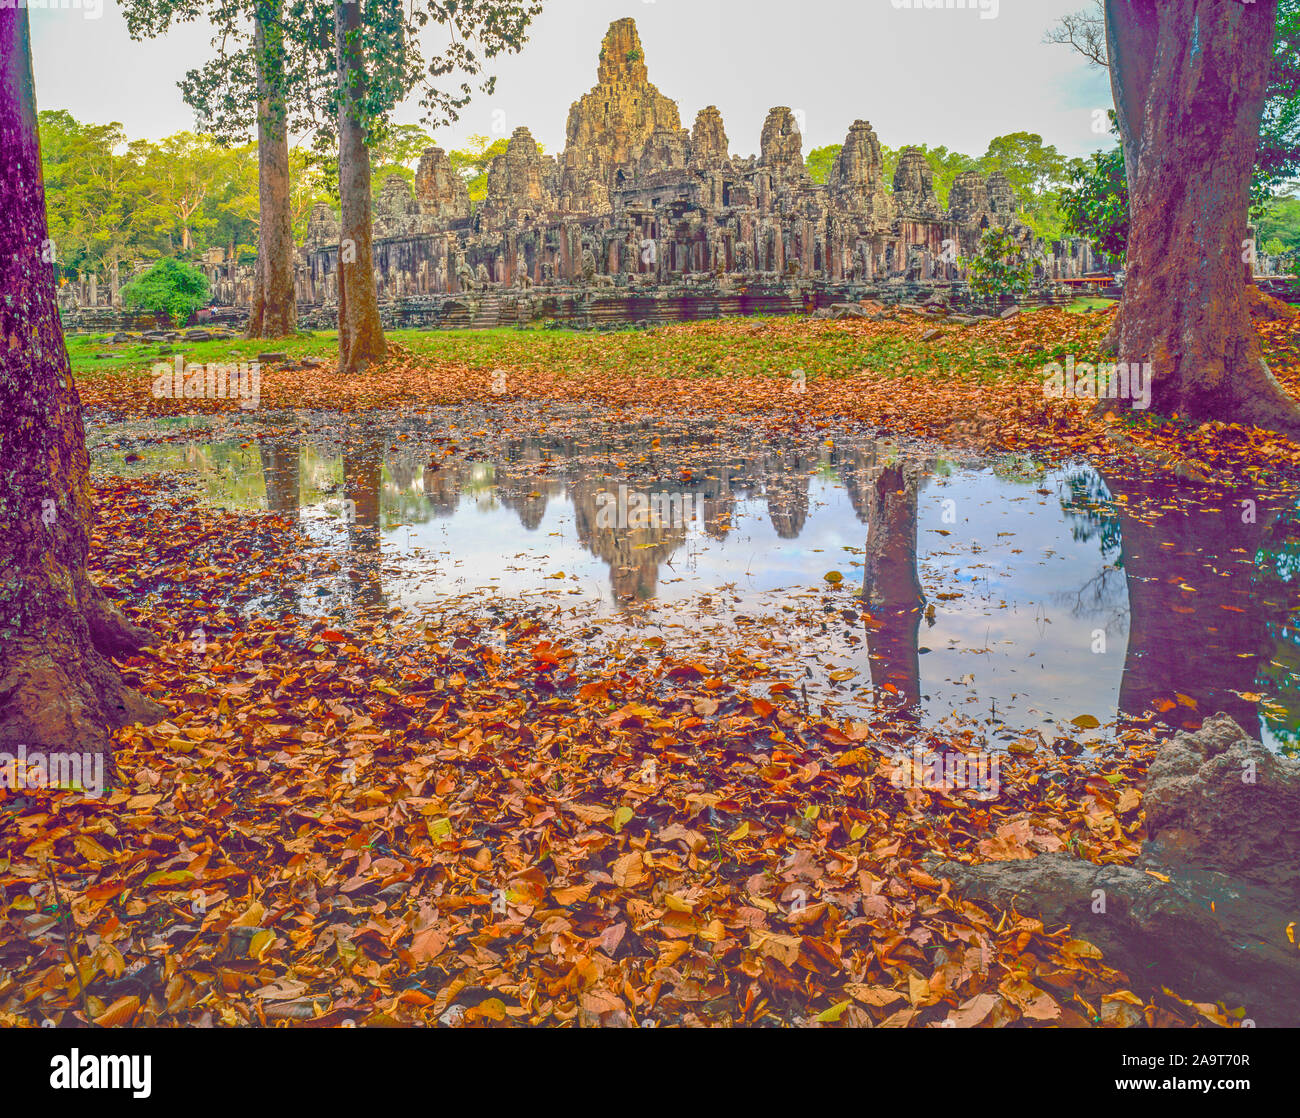 Réflexions temple Bayon, Angkor Watt Parc Archéologique, Cambodge, Ville d'Angkor Thom, construit AD 100-1200 Culture Khmer ruines dans la jungle de l'Asie du Sud-Est Banque D'Images